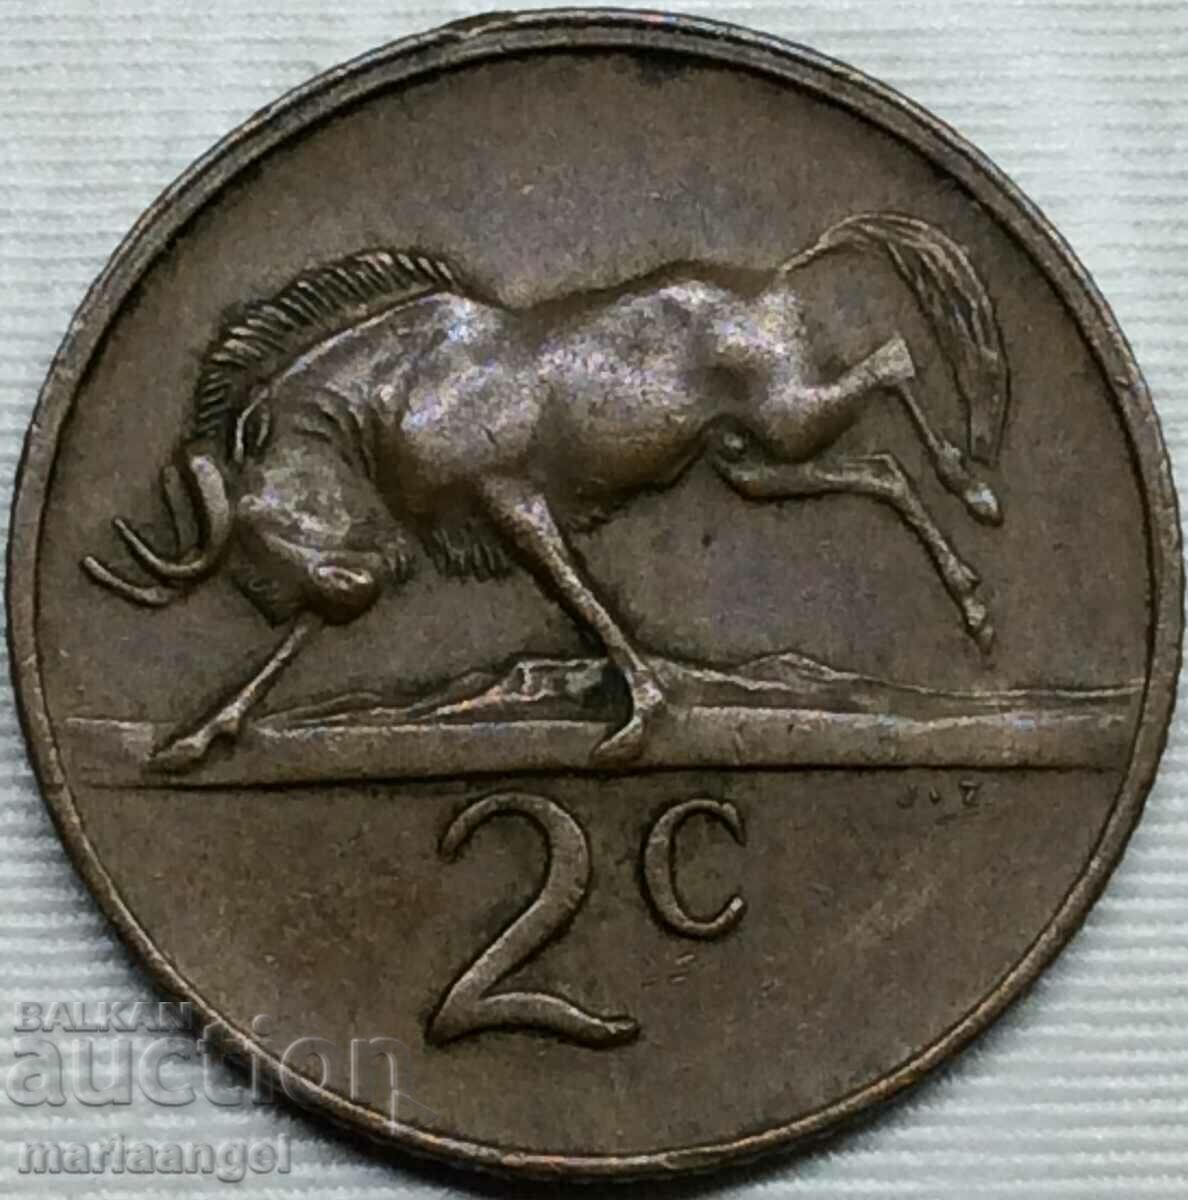 Africa de Sud 1979 2 cenți 22 mm